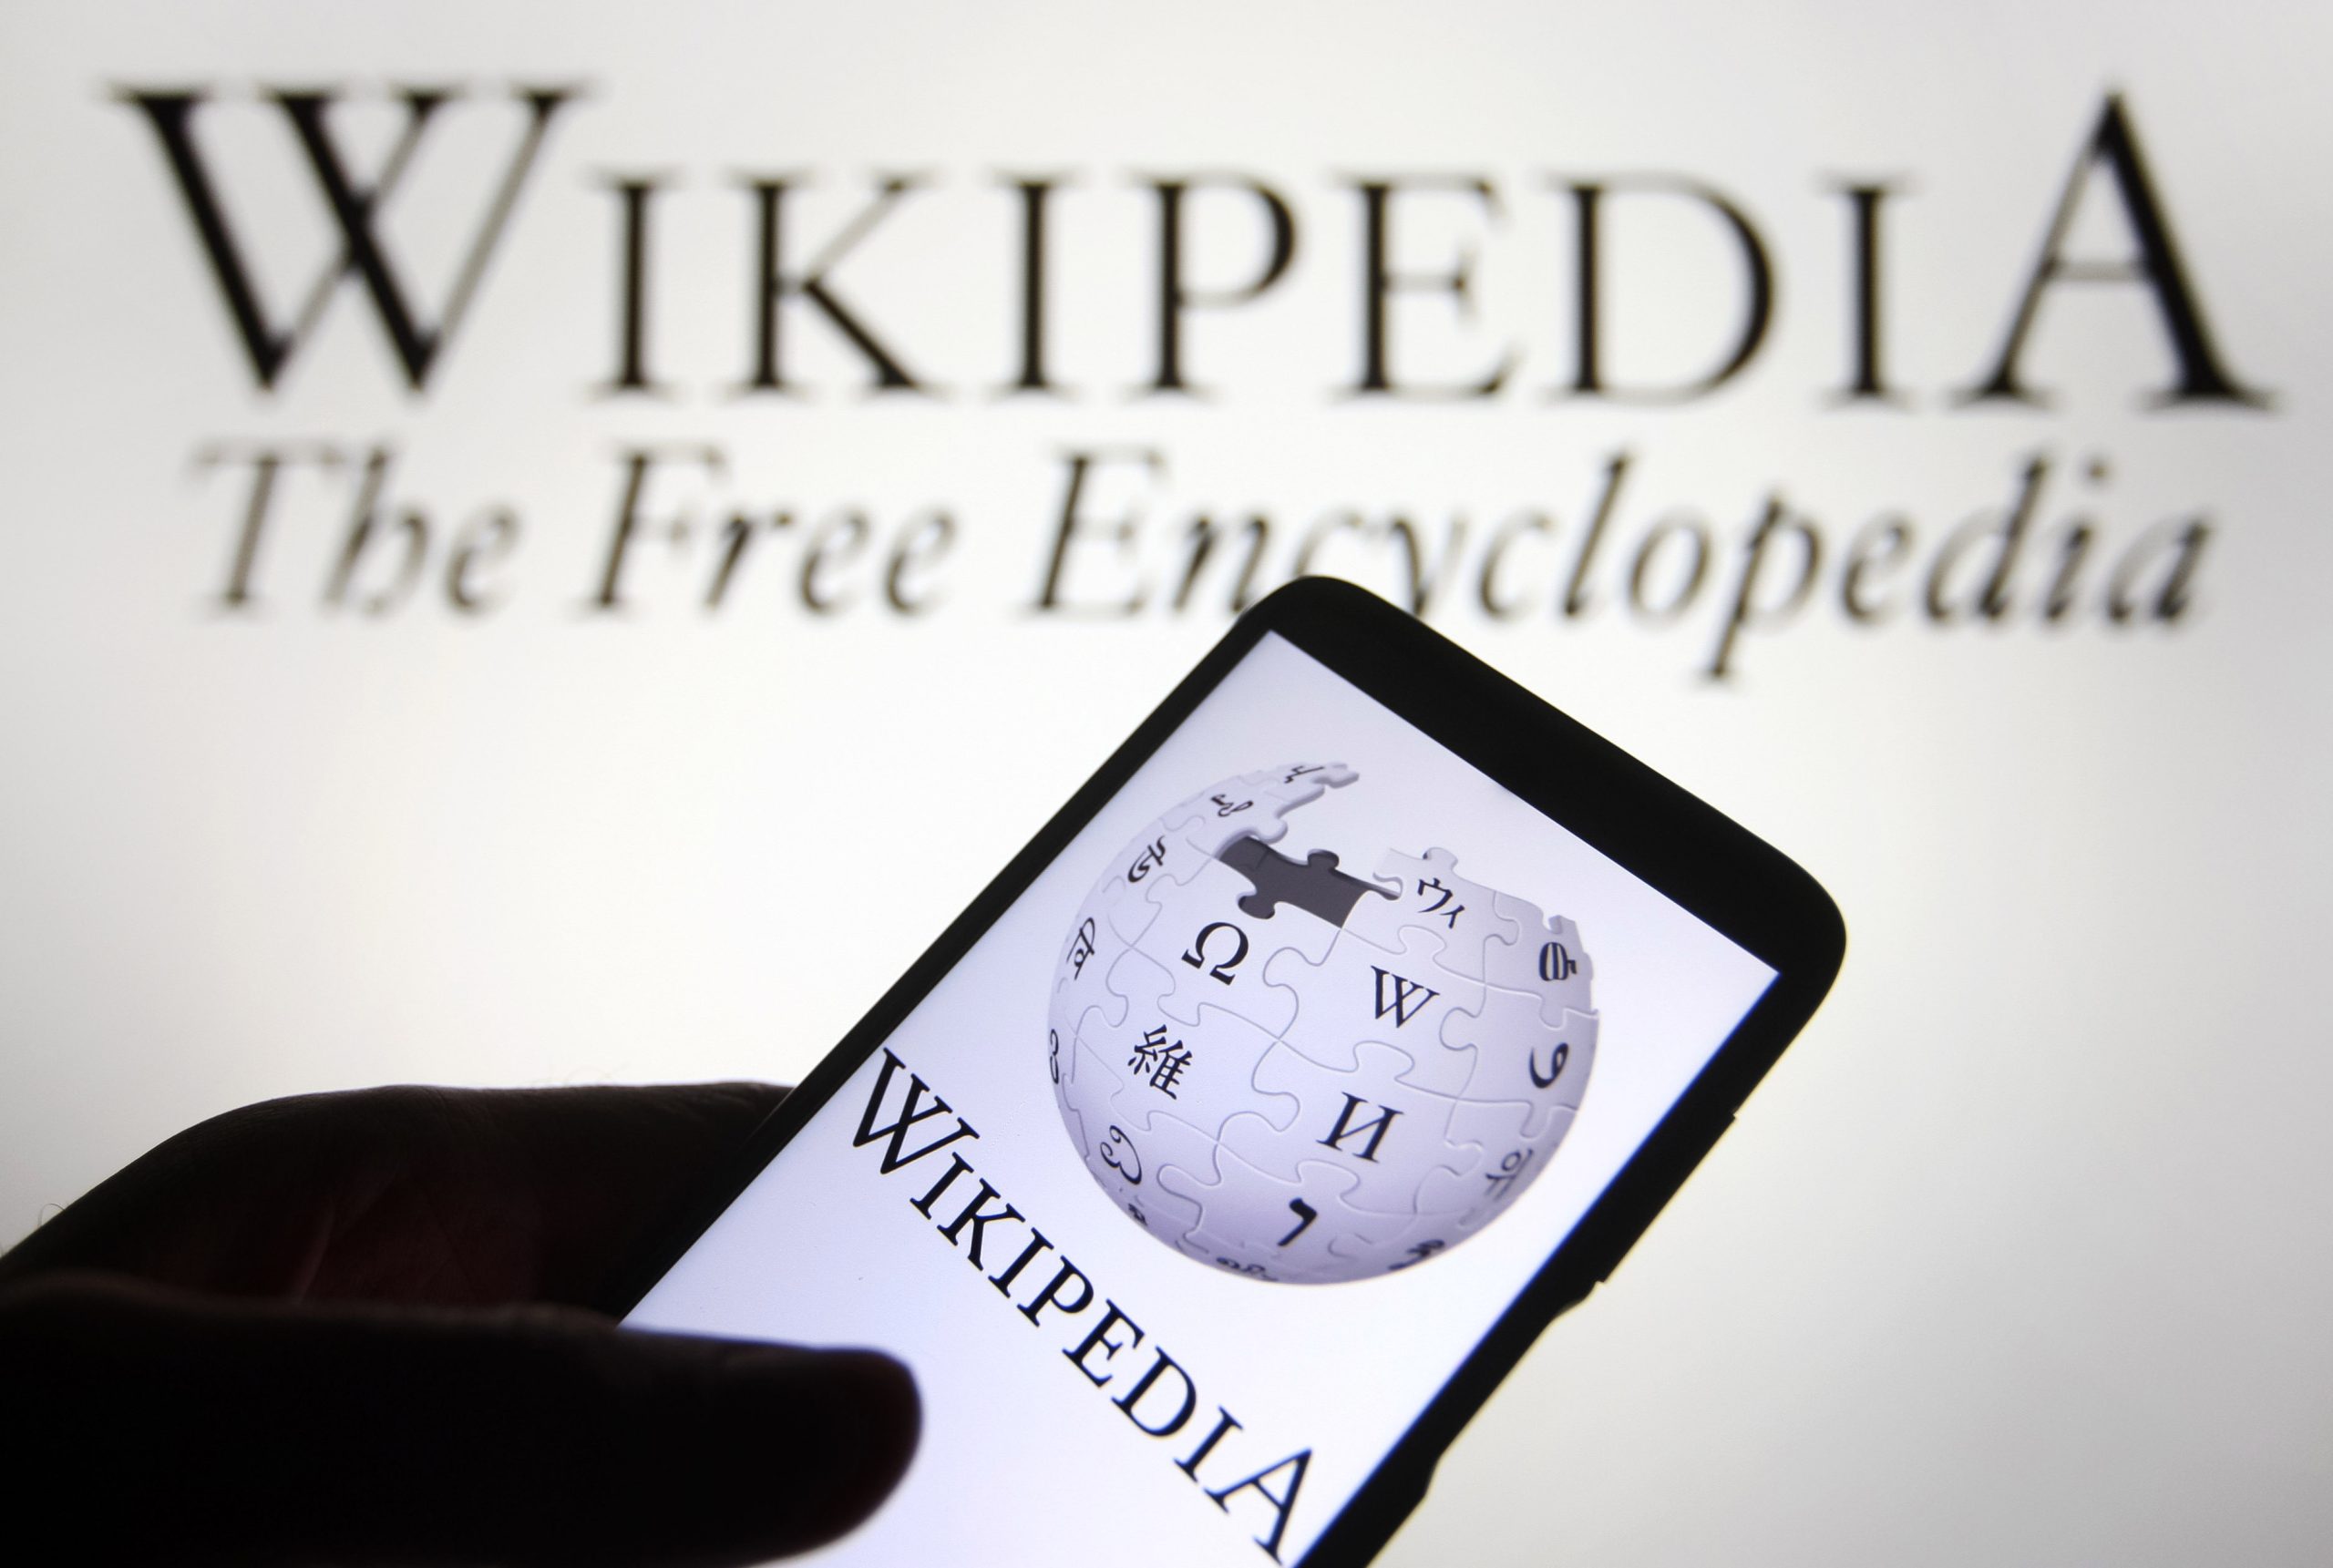 توہین آمیز مواد نہ ہٹانے پر وکی پیڈیا کی سروسز 48 گھنٹوں کے لیے ڈی گریڈ